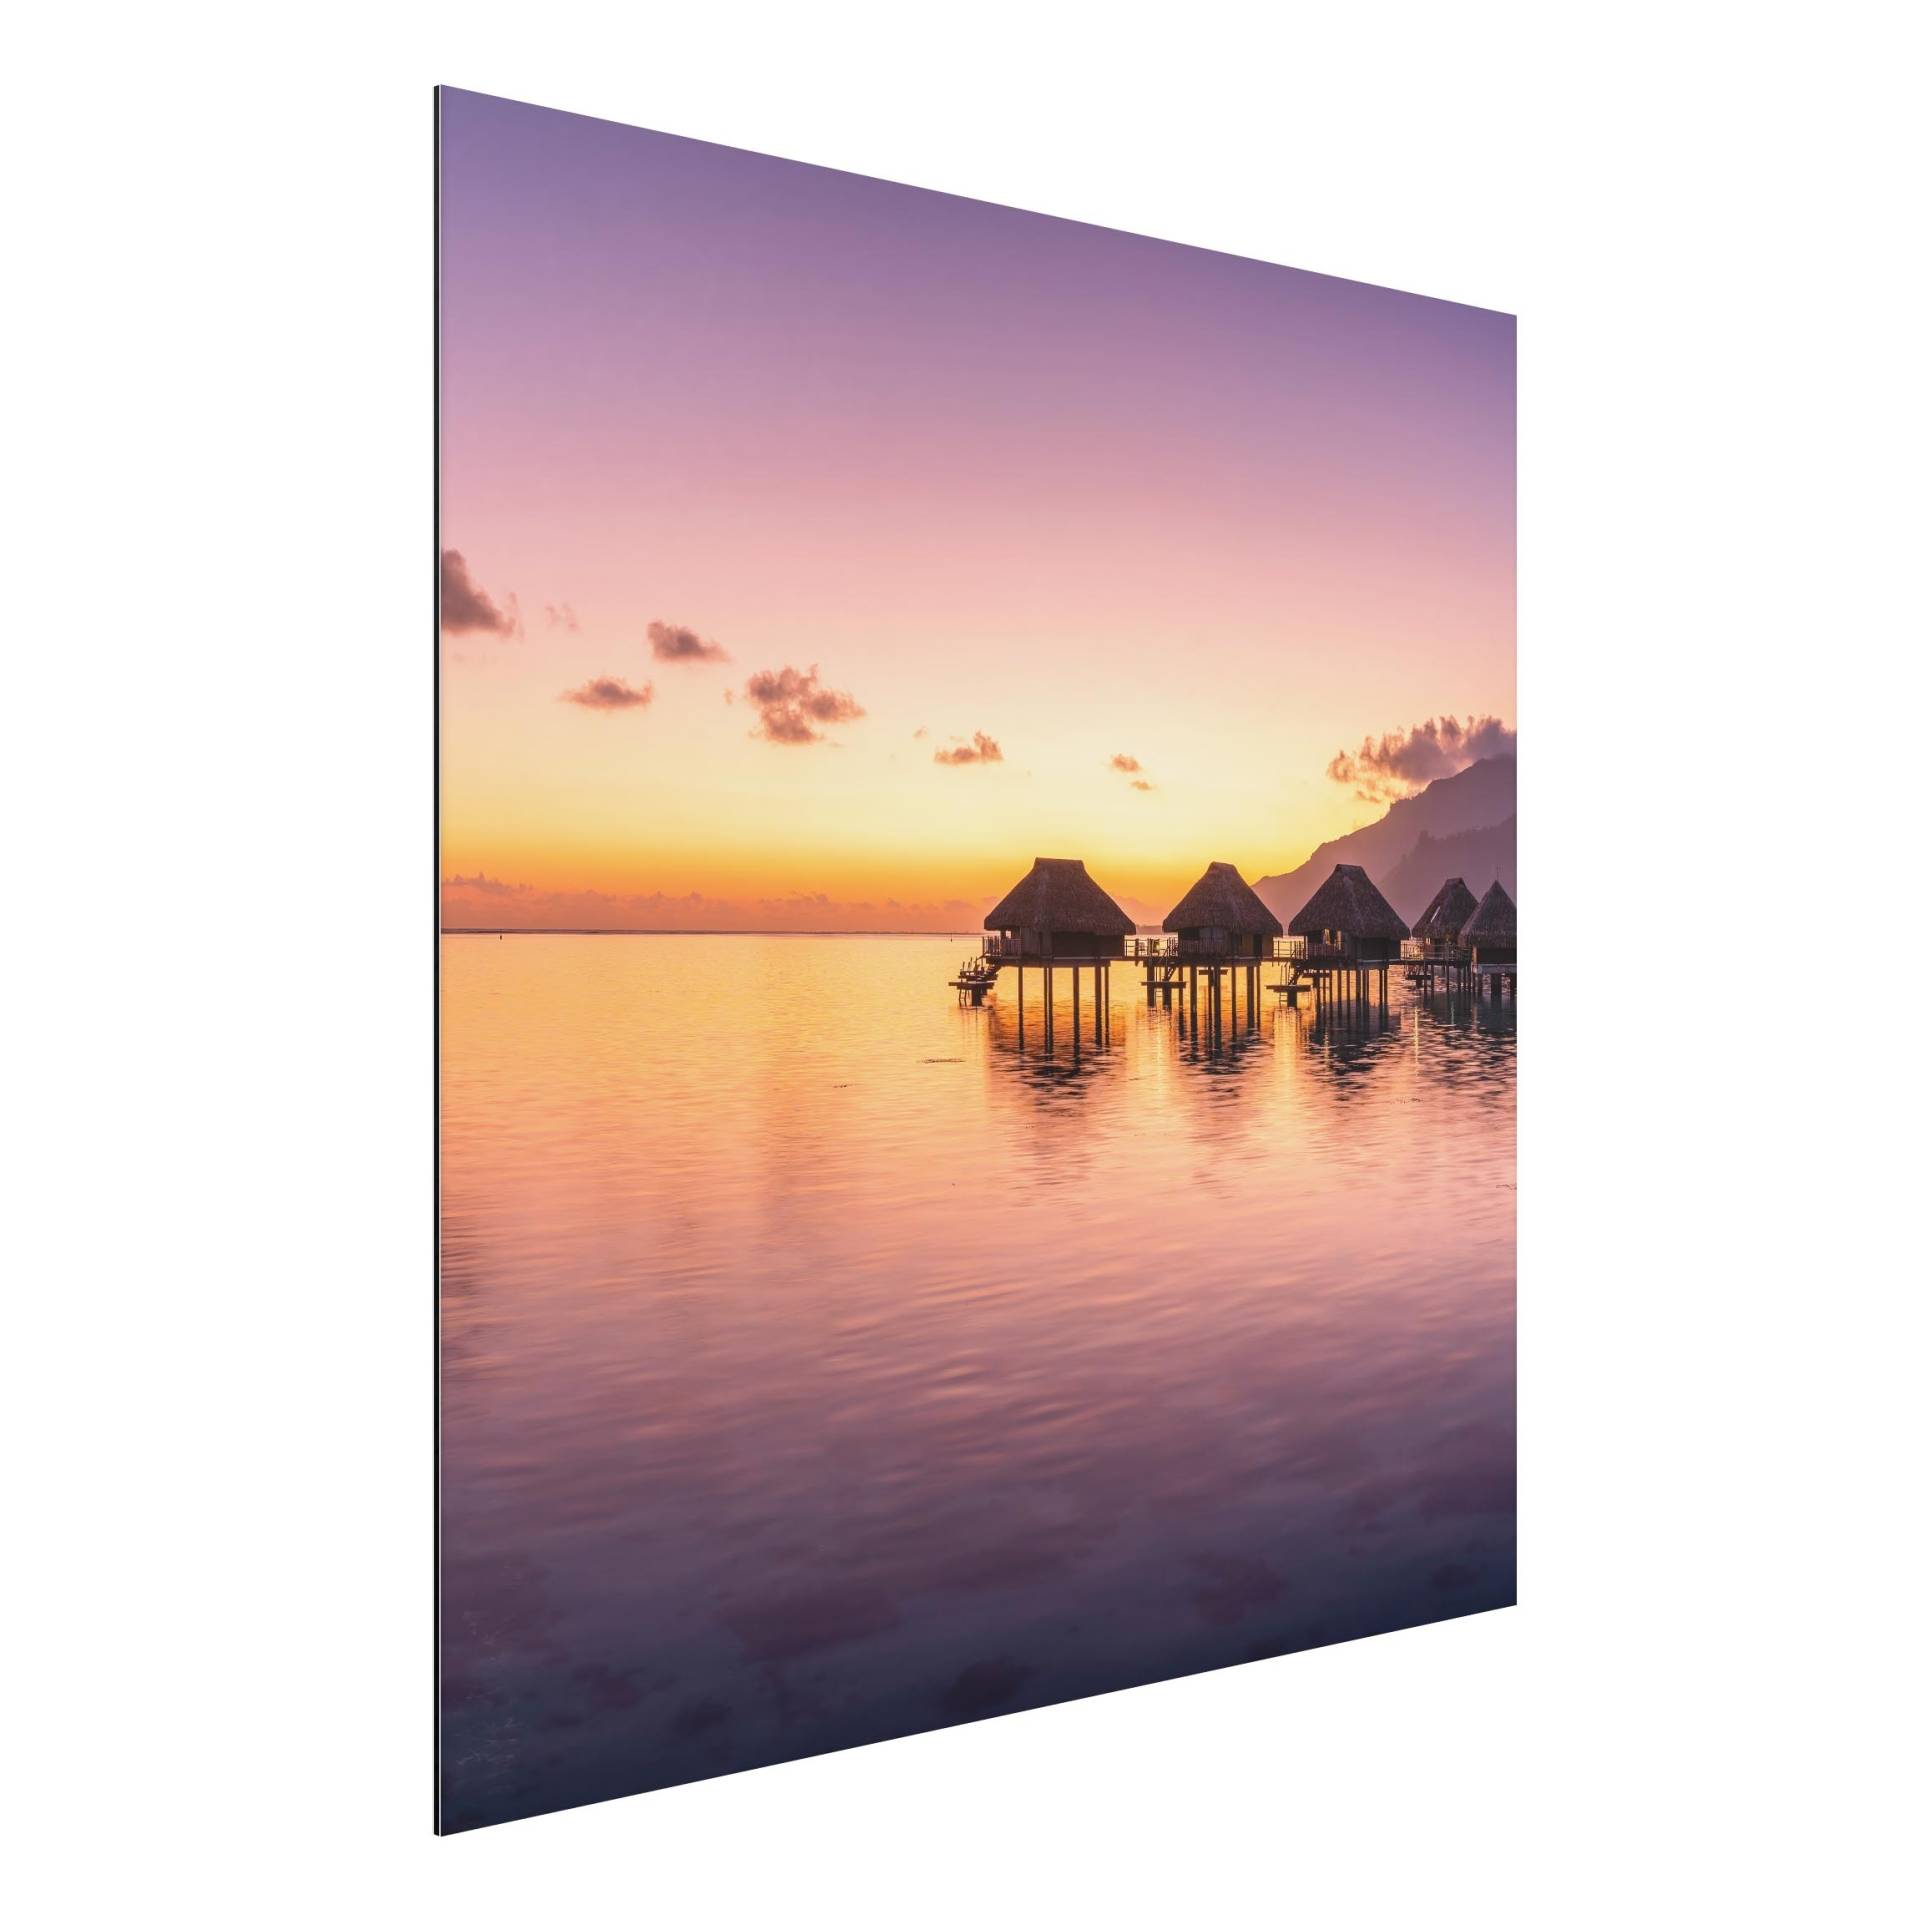 Alu-Dibond Bild Sunset Dream von Klebefieber